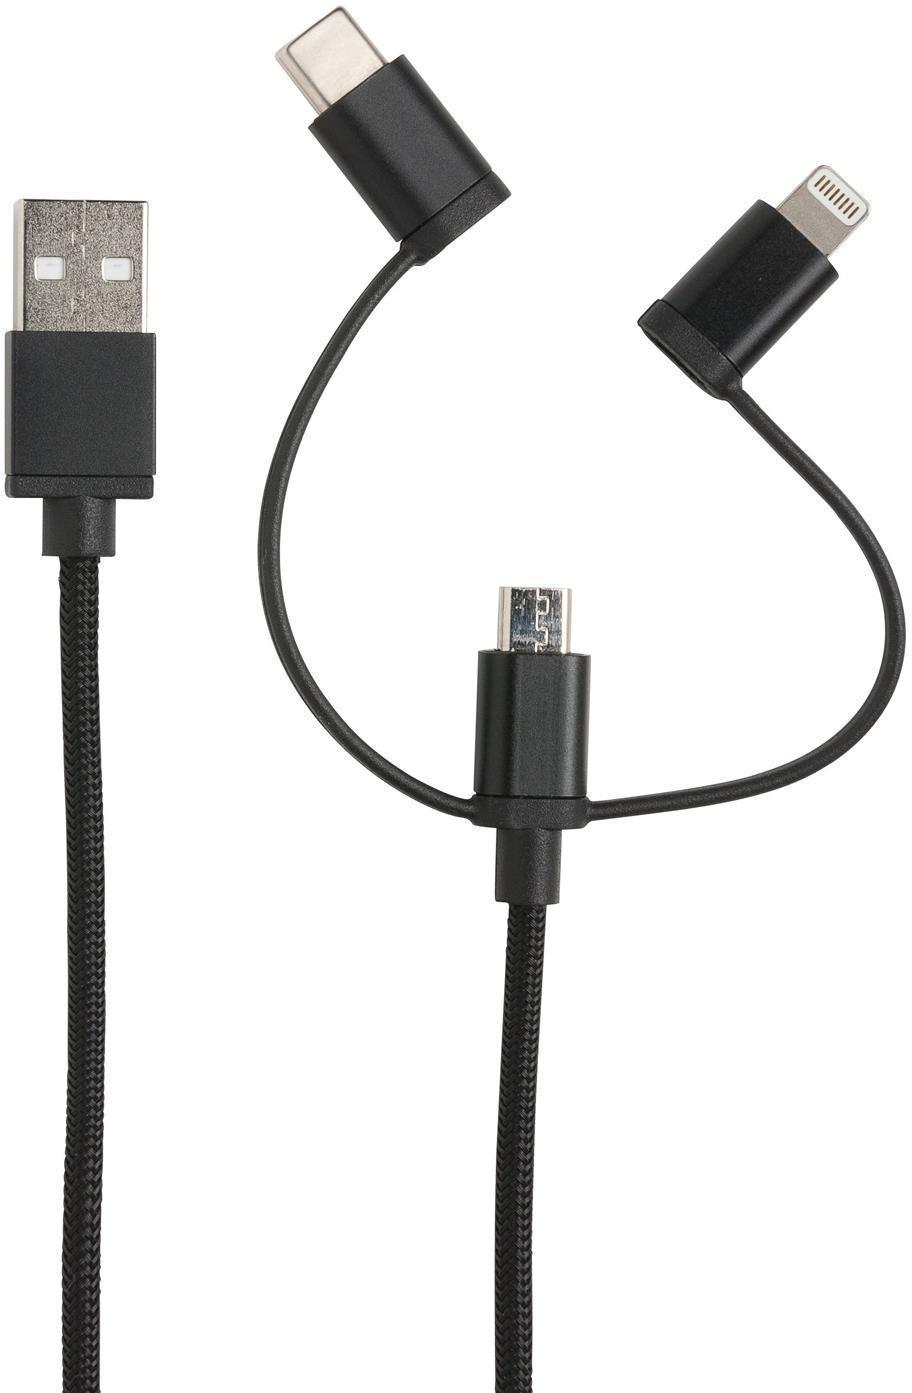 Артикул: XP302.131 — Универсальный кабель 3 в 1 с лицензией MFi